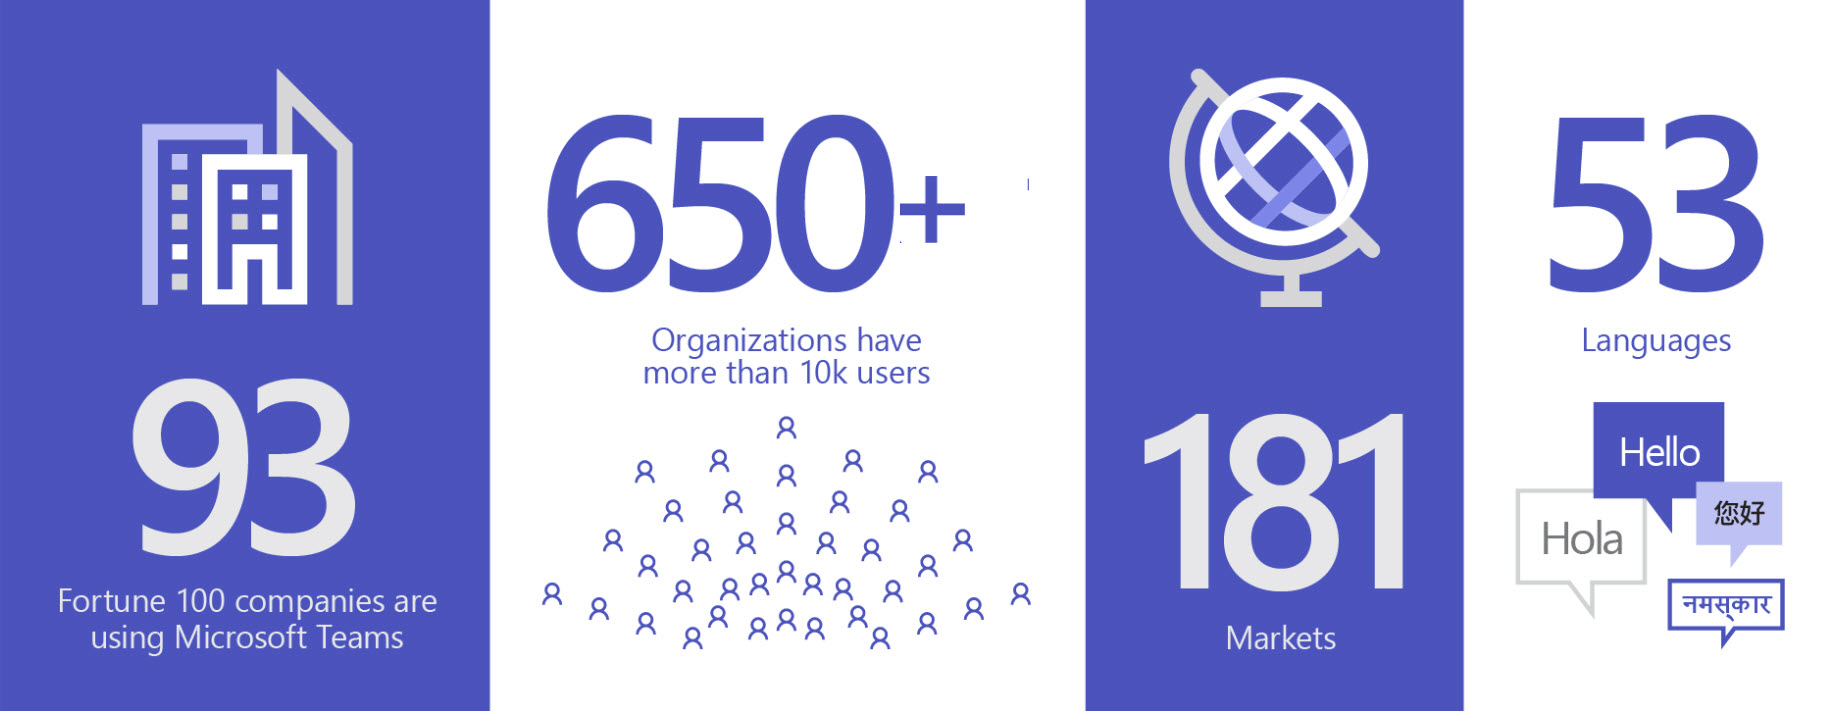 圖片顯示 93 個使用 Teams 的組織、650 多個組織在 181 個市場擁有逾 10000 個使用者，使用的語言達 53 種。